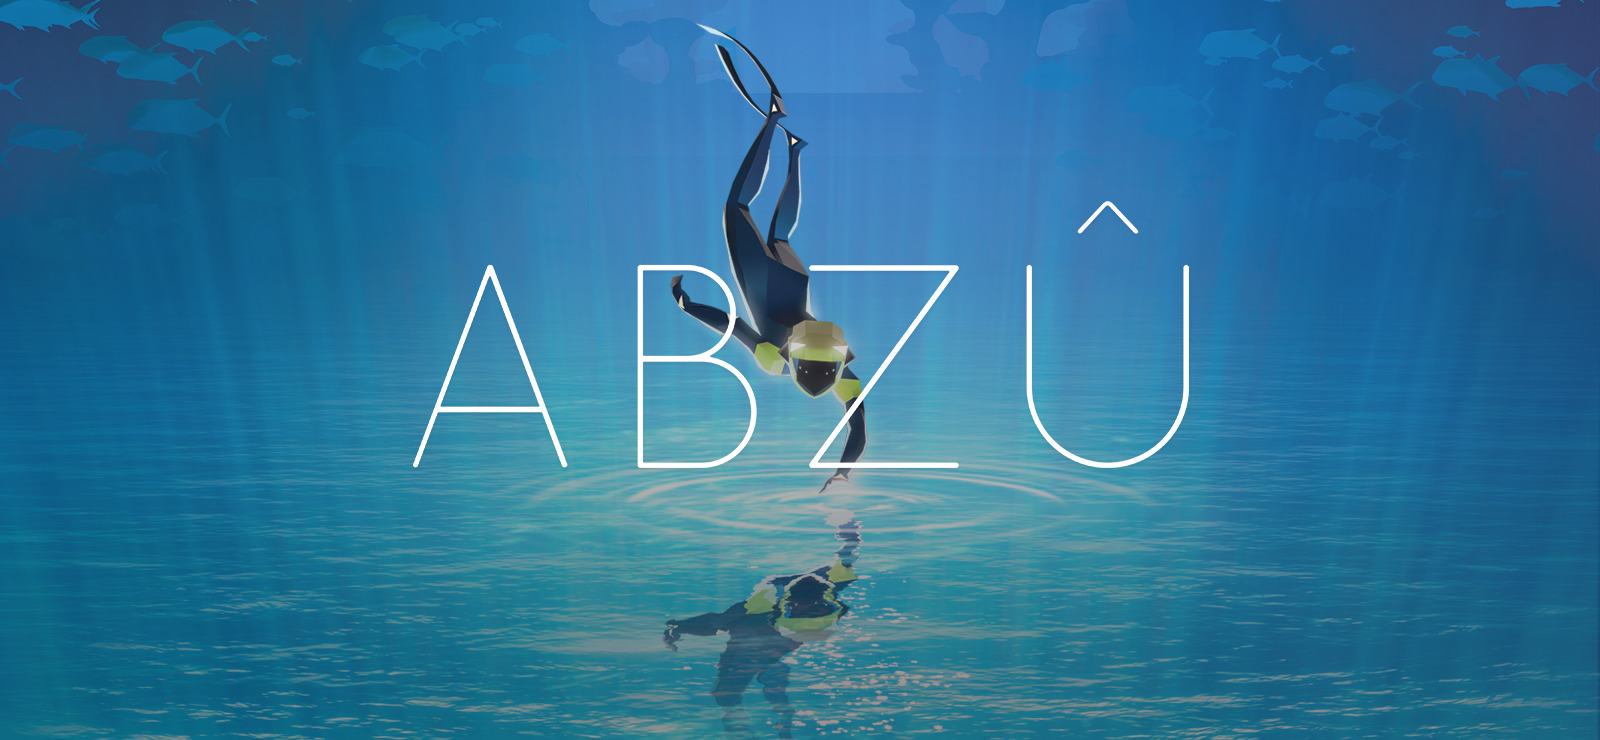 abzu definition